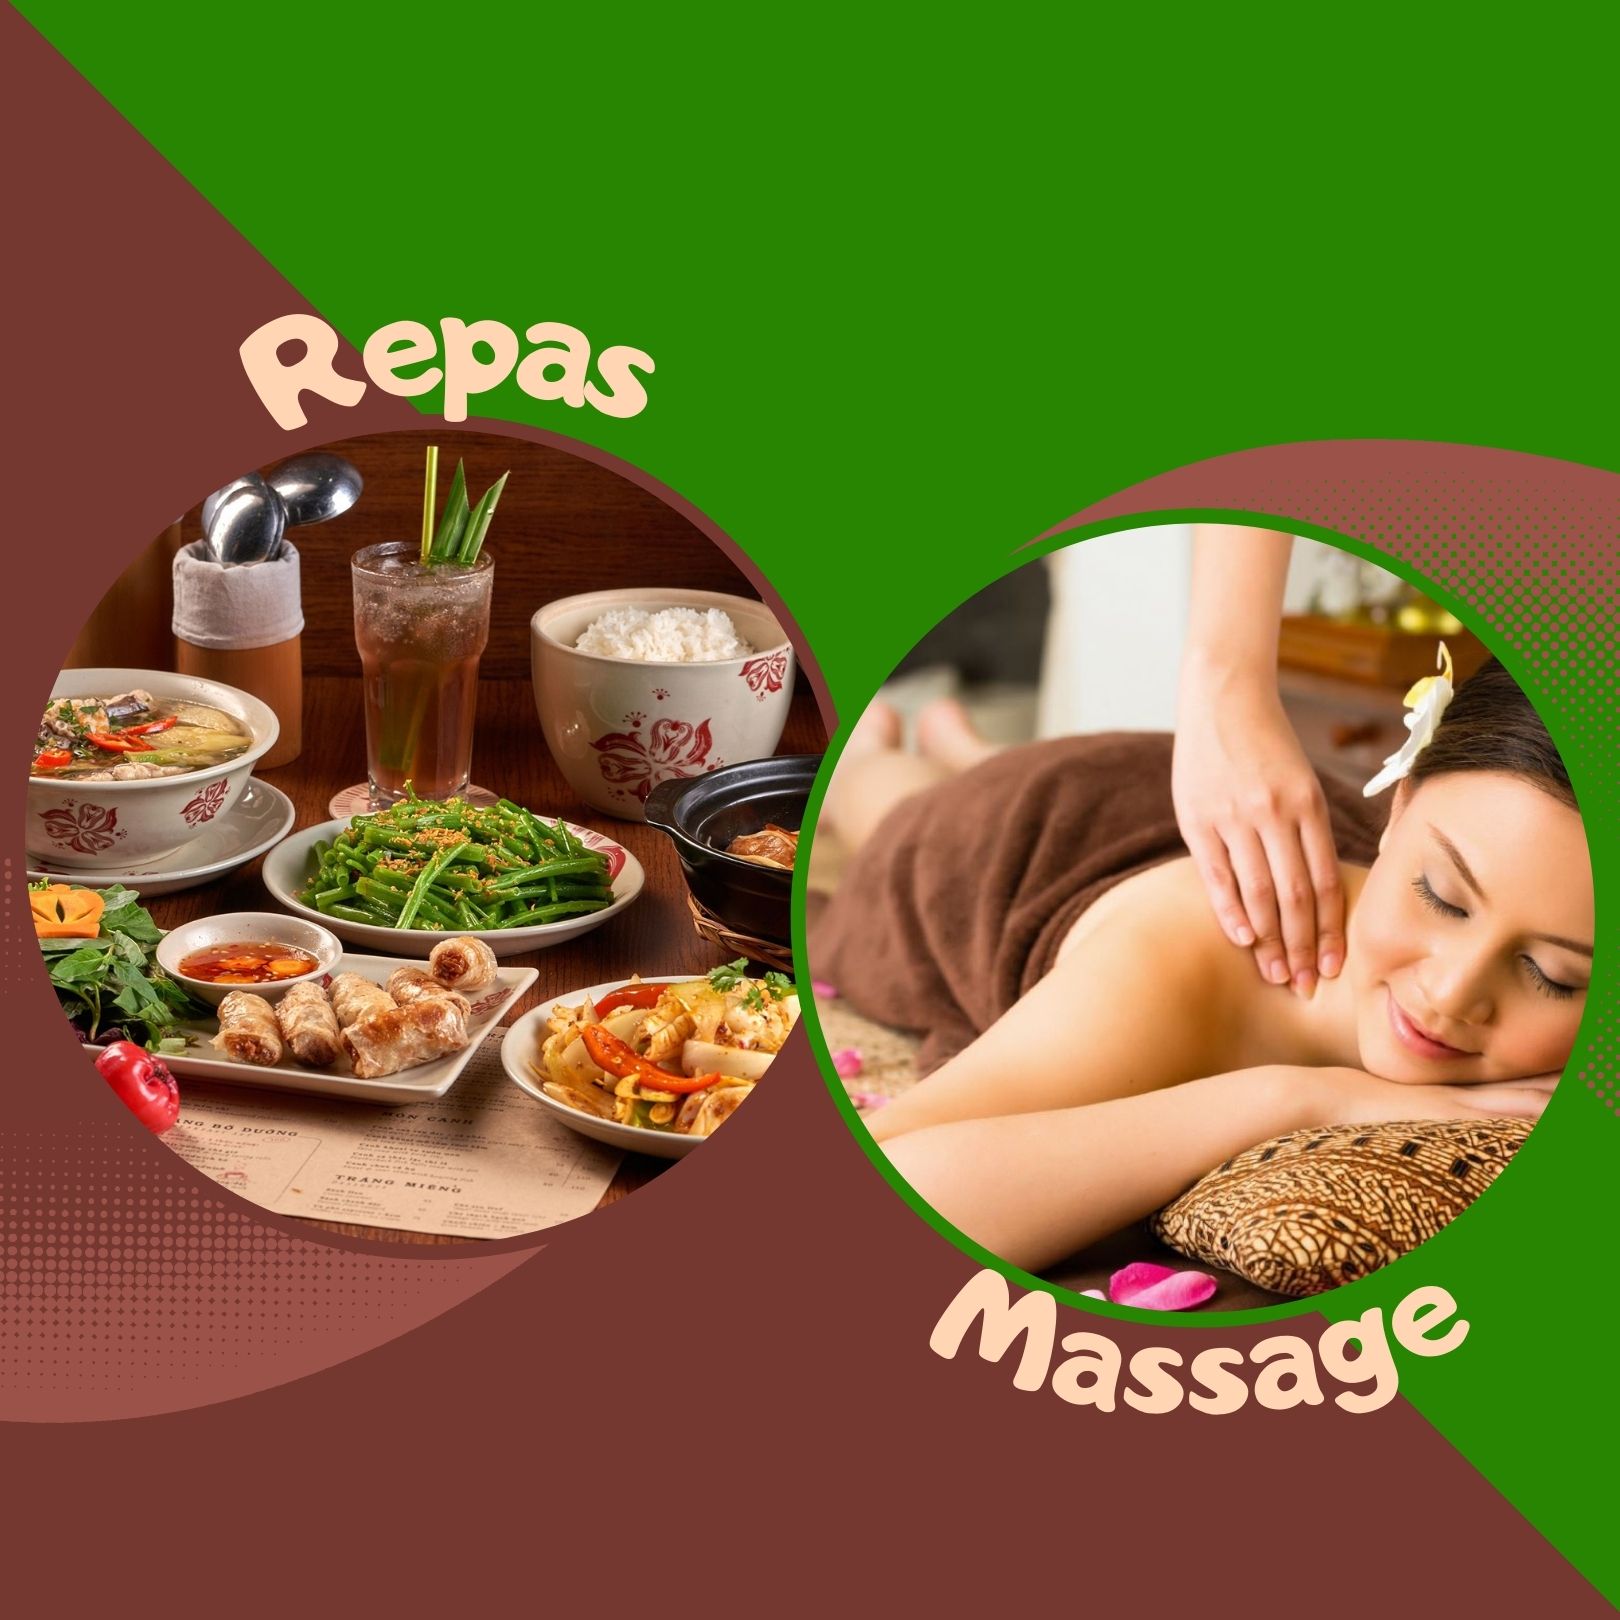 Repas ou massage - offre speciale - Authentik Vietnam